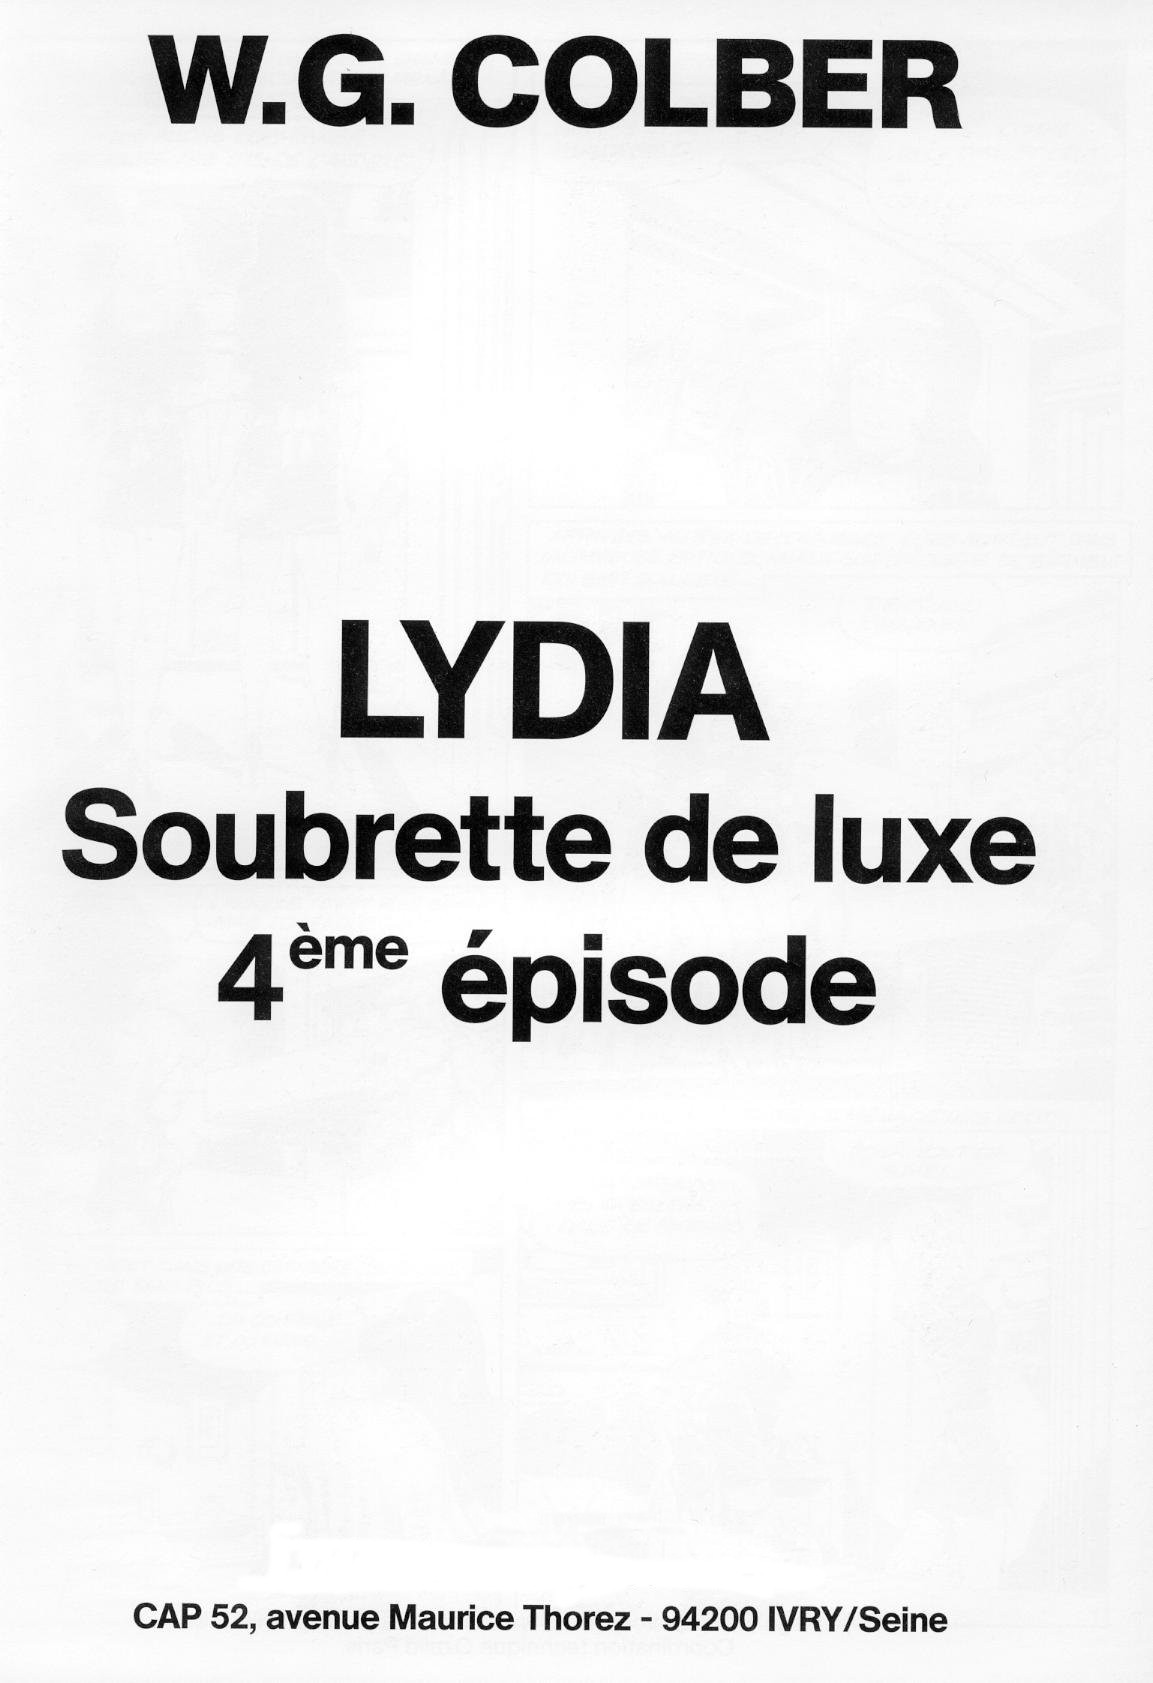 Lydia soubrette de luxe 4 numero d'image 1